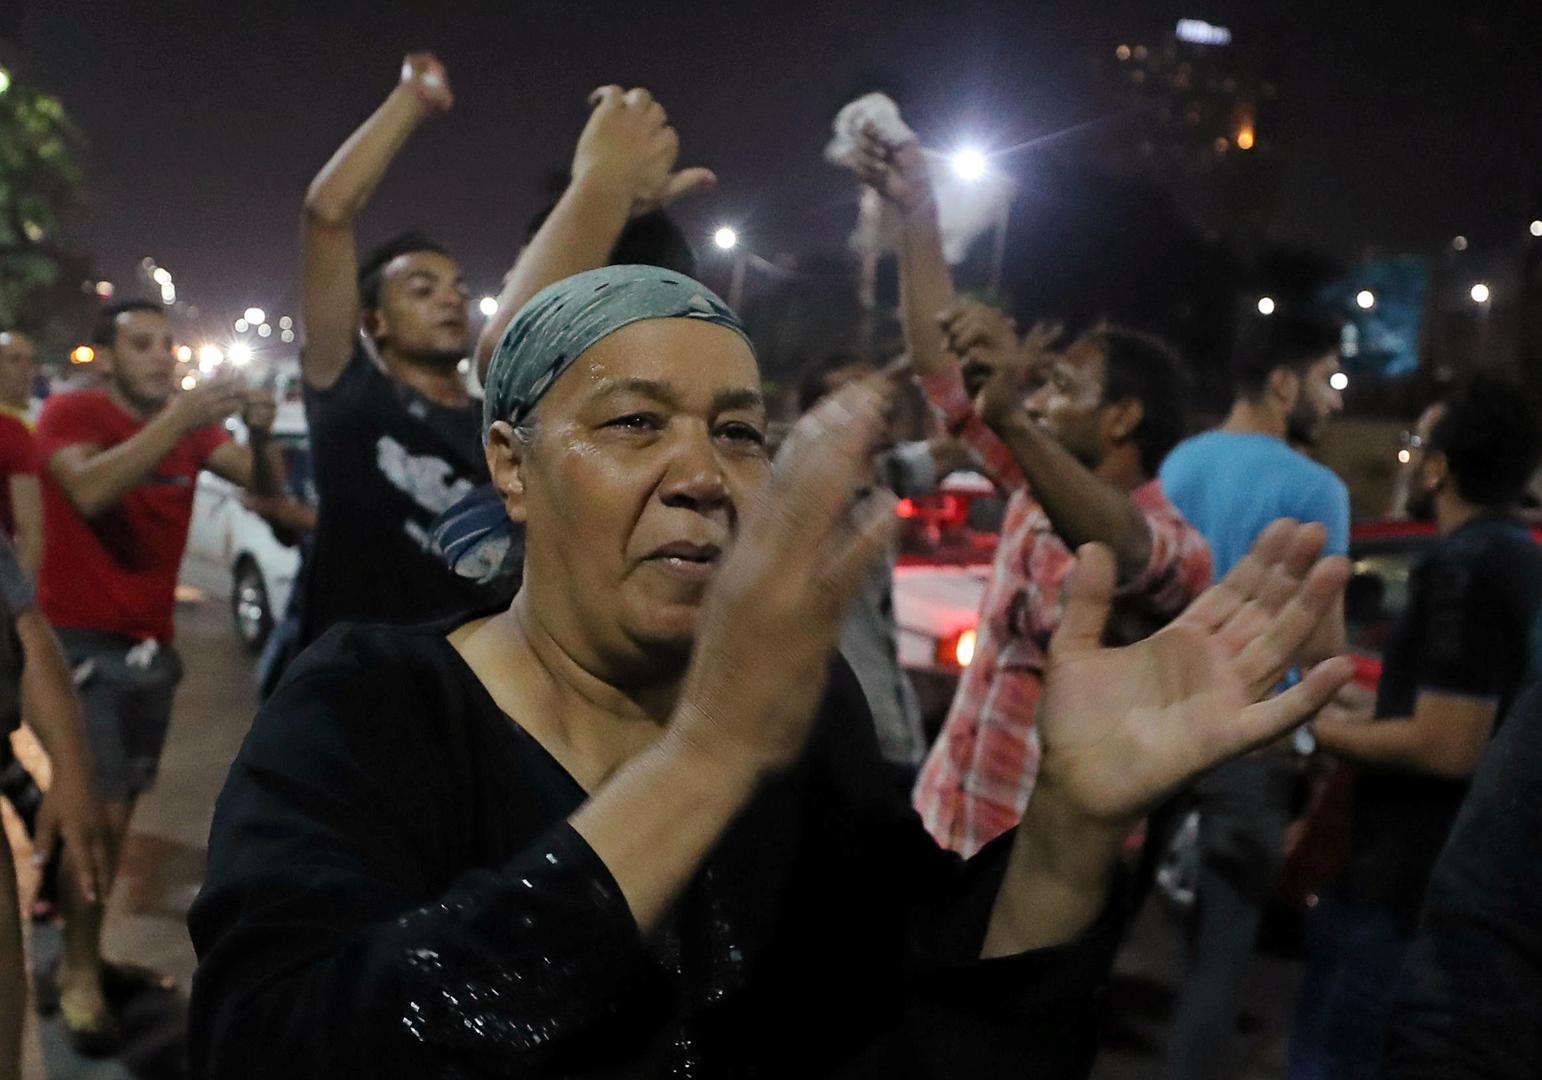 مجموعات صغيرة من المتظاهرين يتجمعون وسط القاهرة ويرددون هتافات مناهضة للحكومة في القاهرة، مصر في 21 سبتمبر/أيلول 2019. ©2019 رويترز/محمد عبد الغني